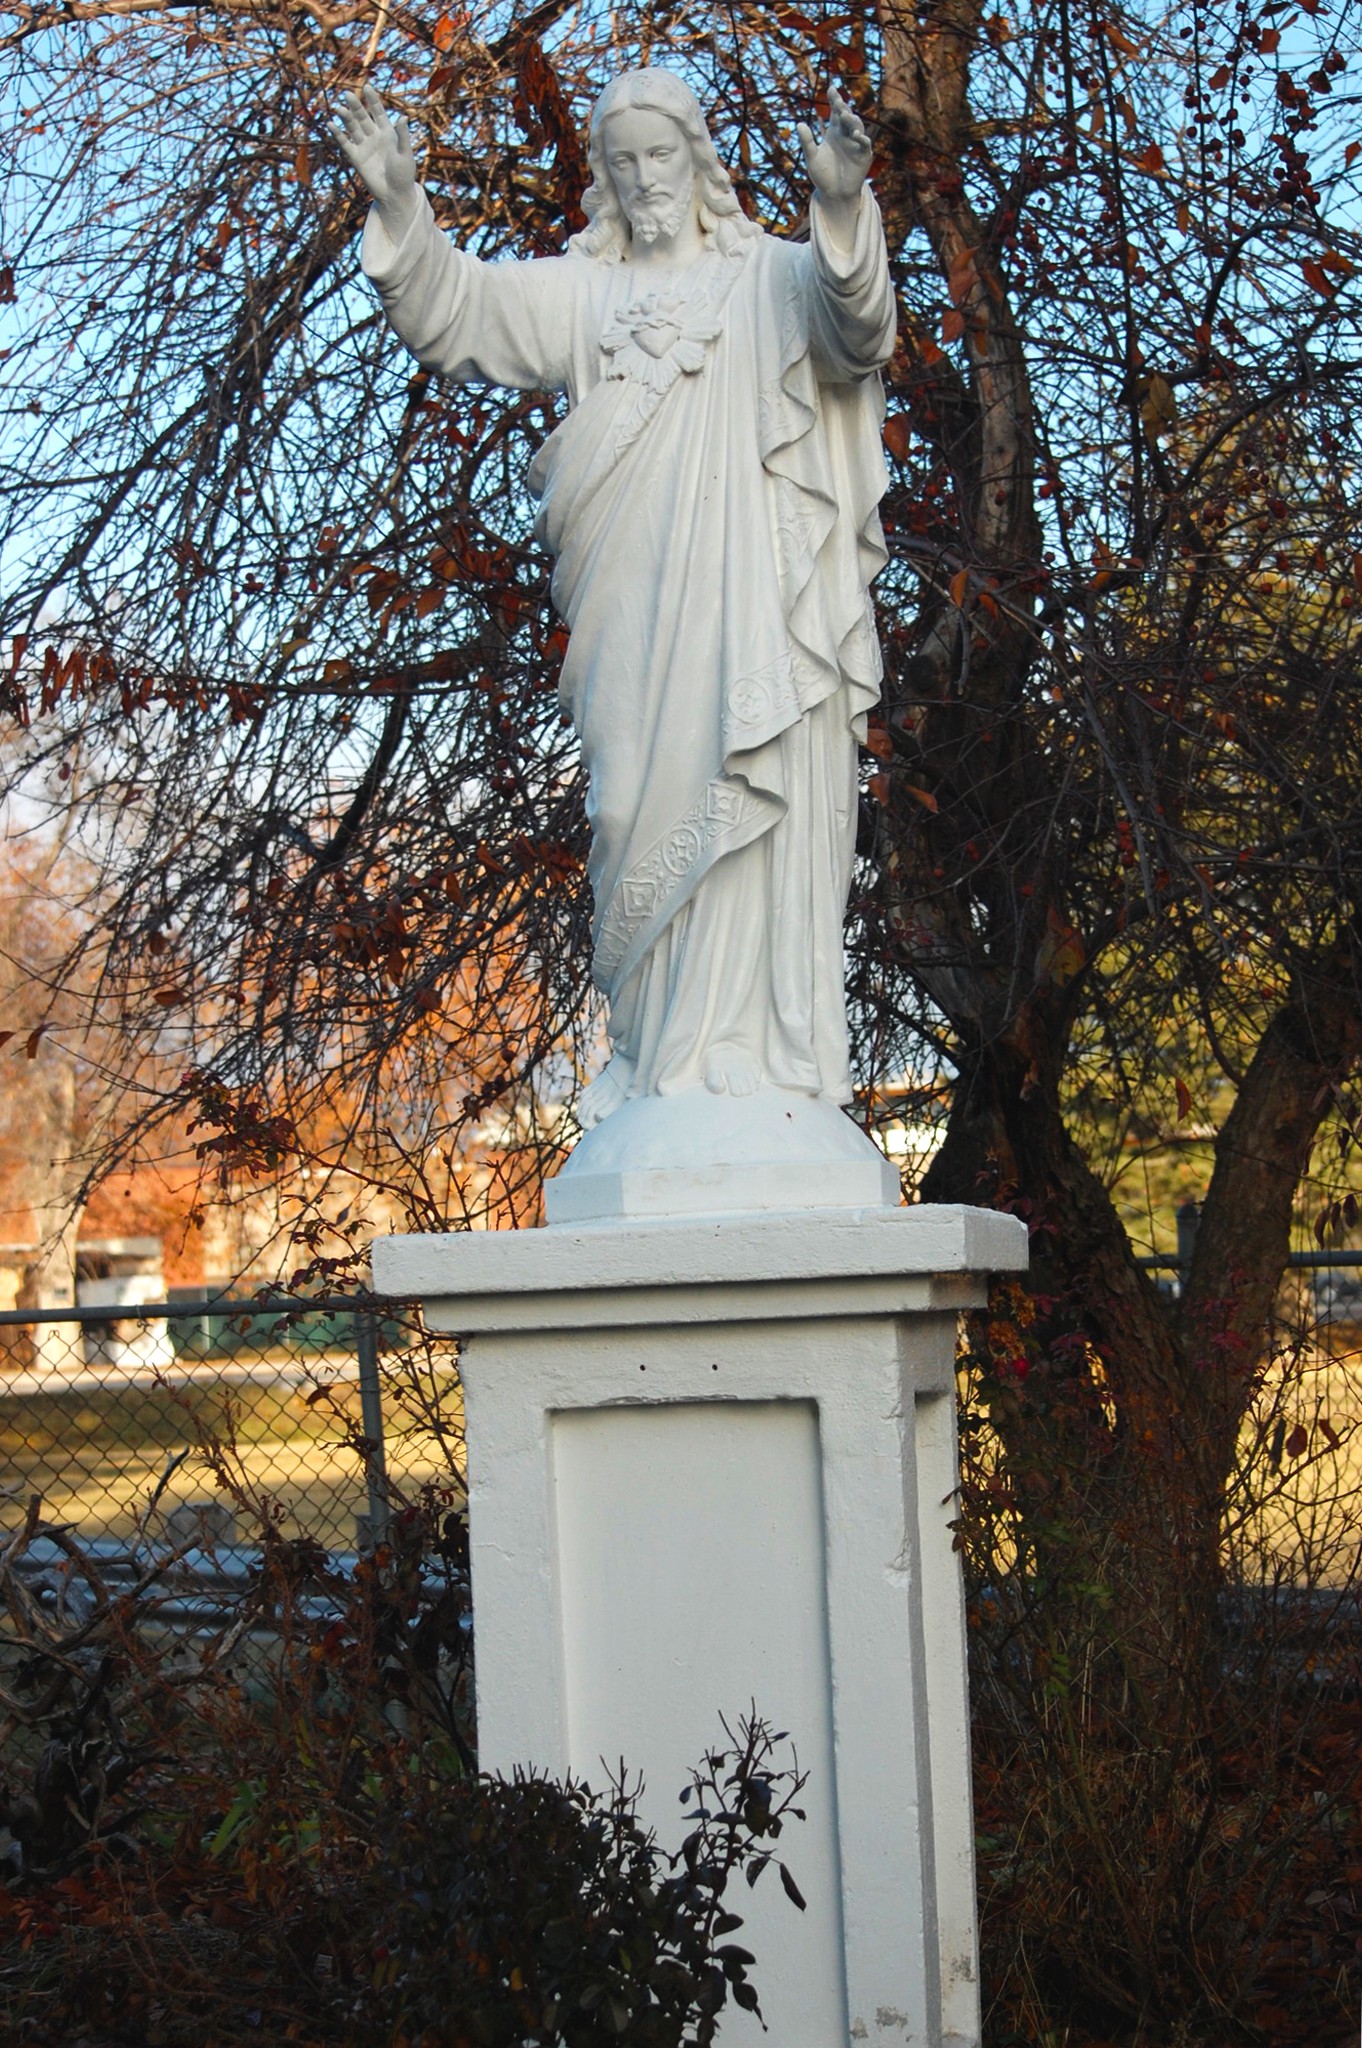 Jesus outdoor sculpture